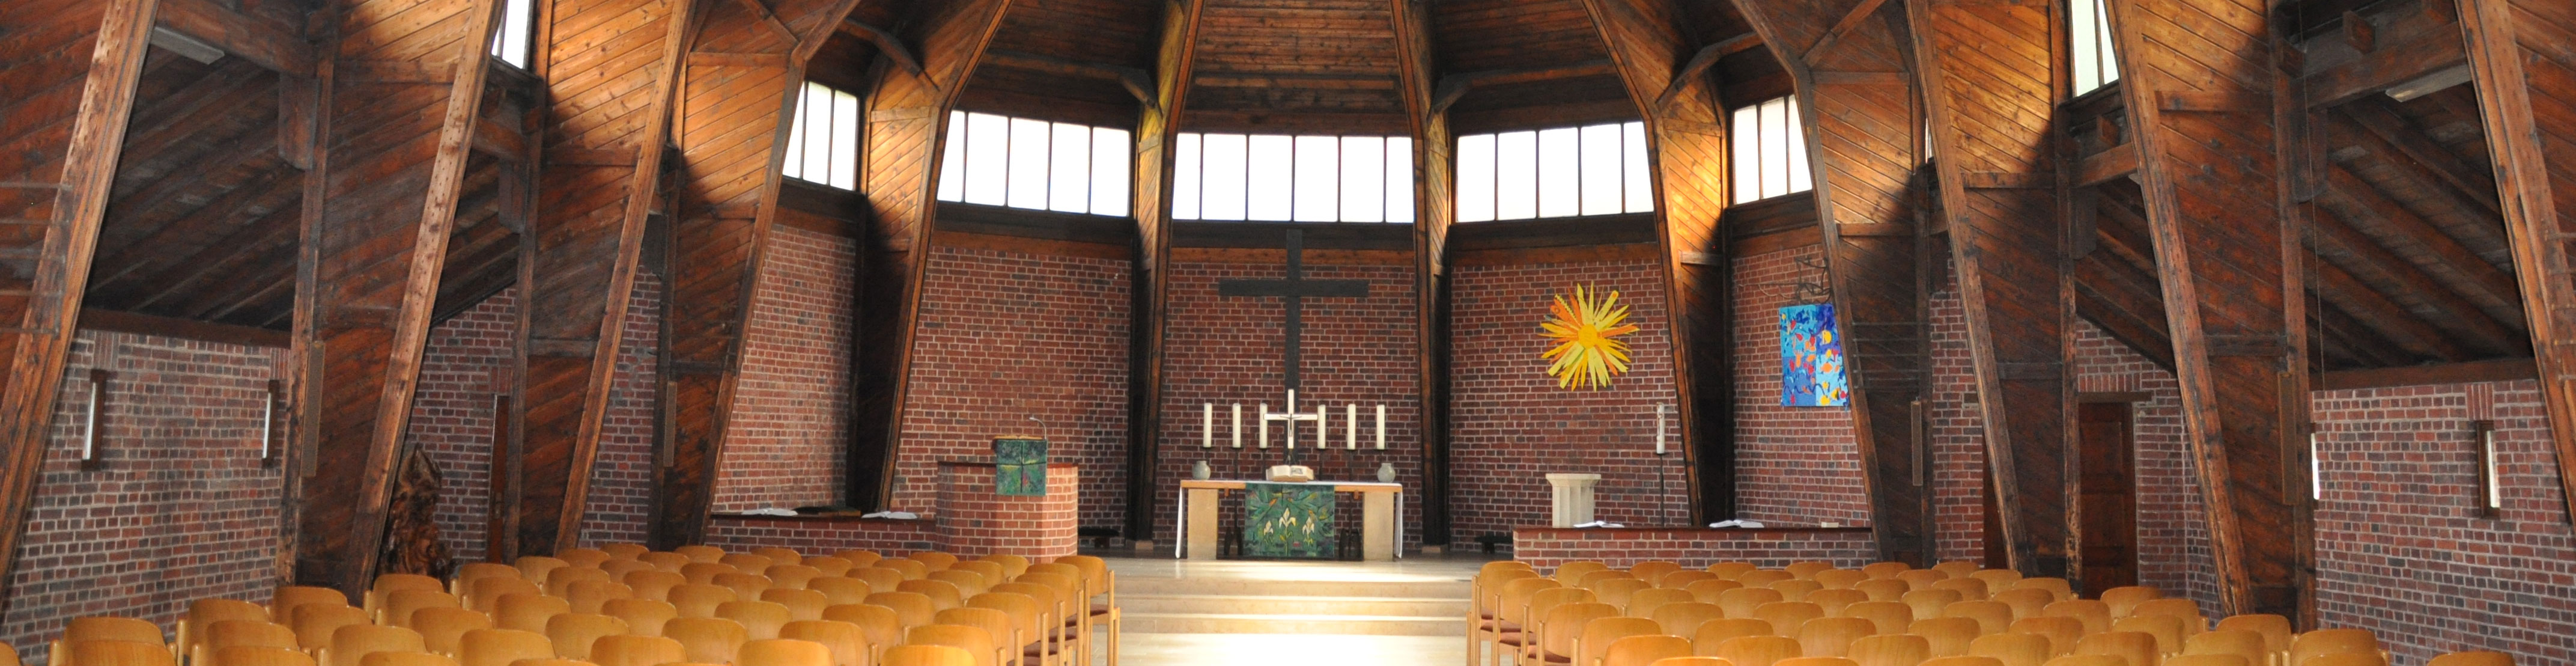 Die Erlöserkirche mit ihrer prägenden Holzbinderkonstruktion im Innenraum